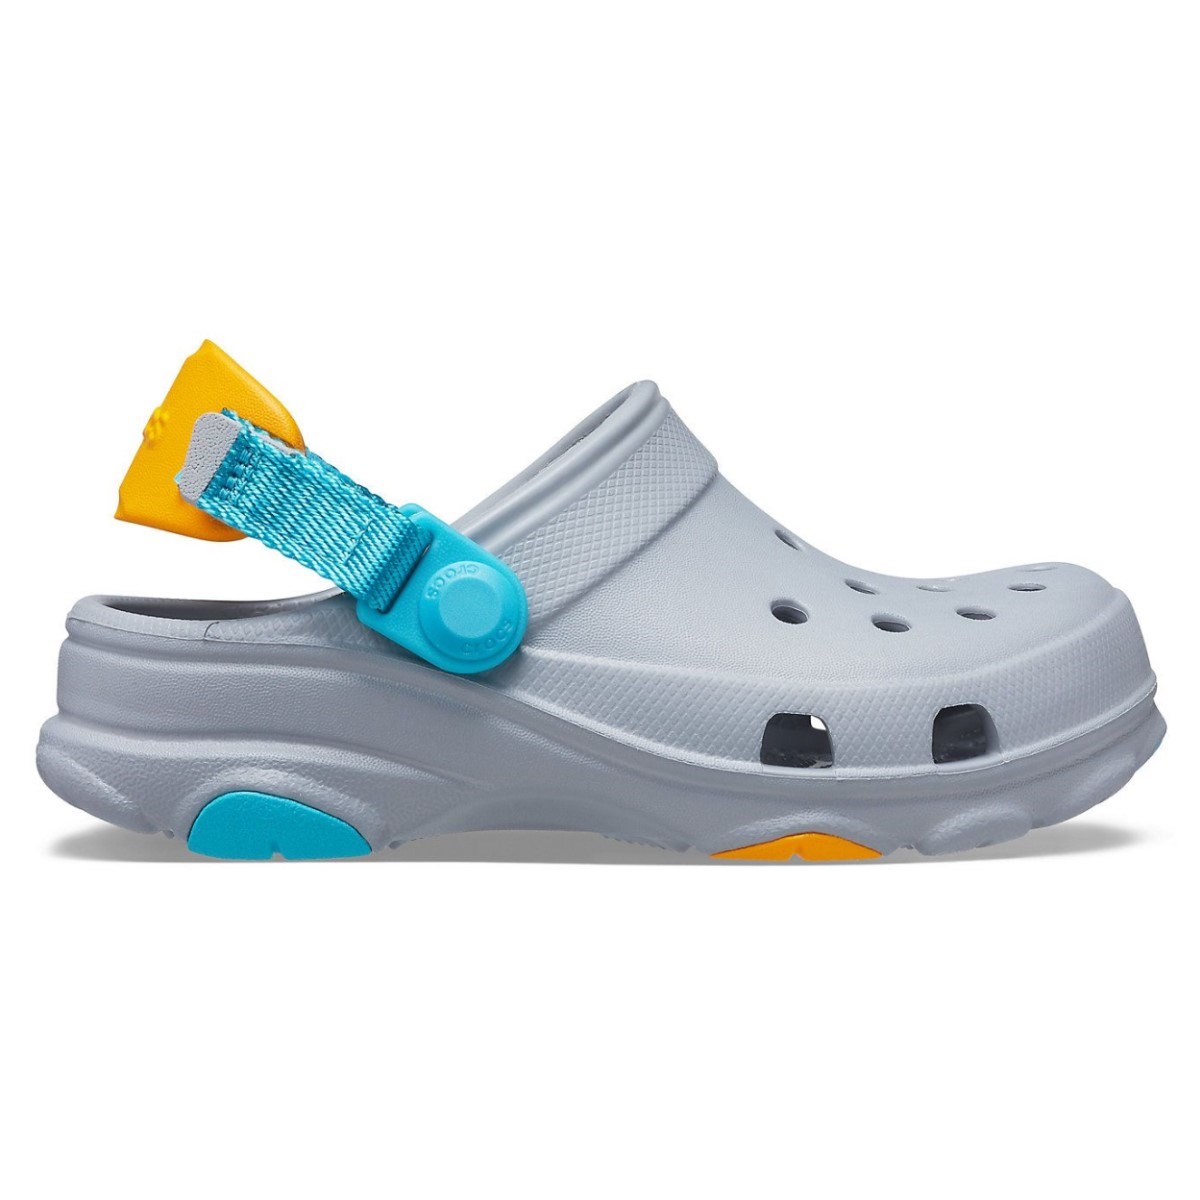 Crocs Unisex Çocuk Sandalet 207011 Light Grey